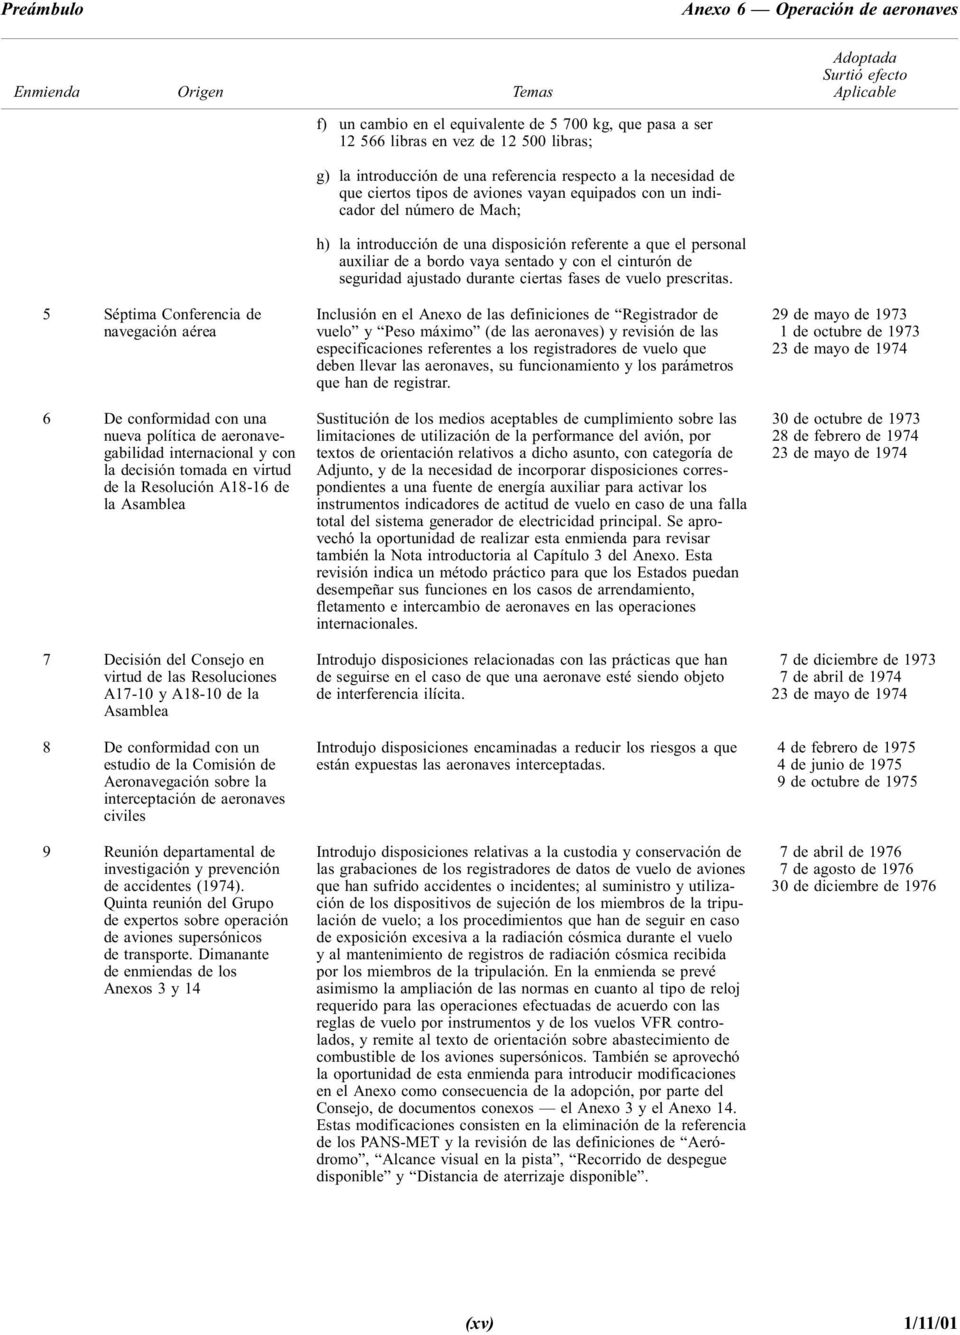 estudio de la Comisión de Aeronavegación sobre la interceptación de aeronaves civiles 9 Reunión departamental de investigación y prevención de accidentes (1974).